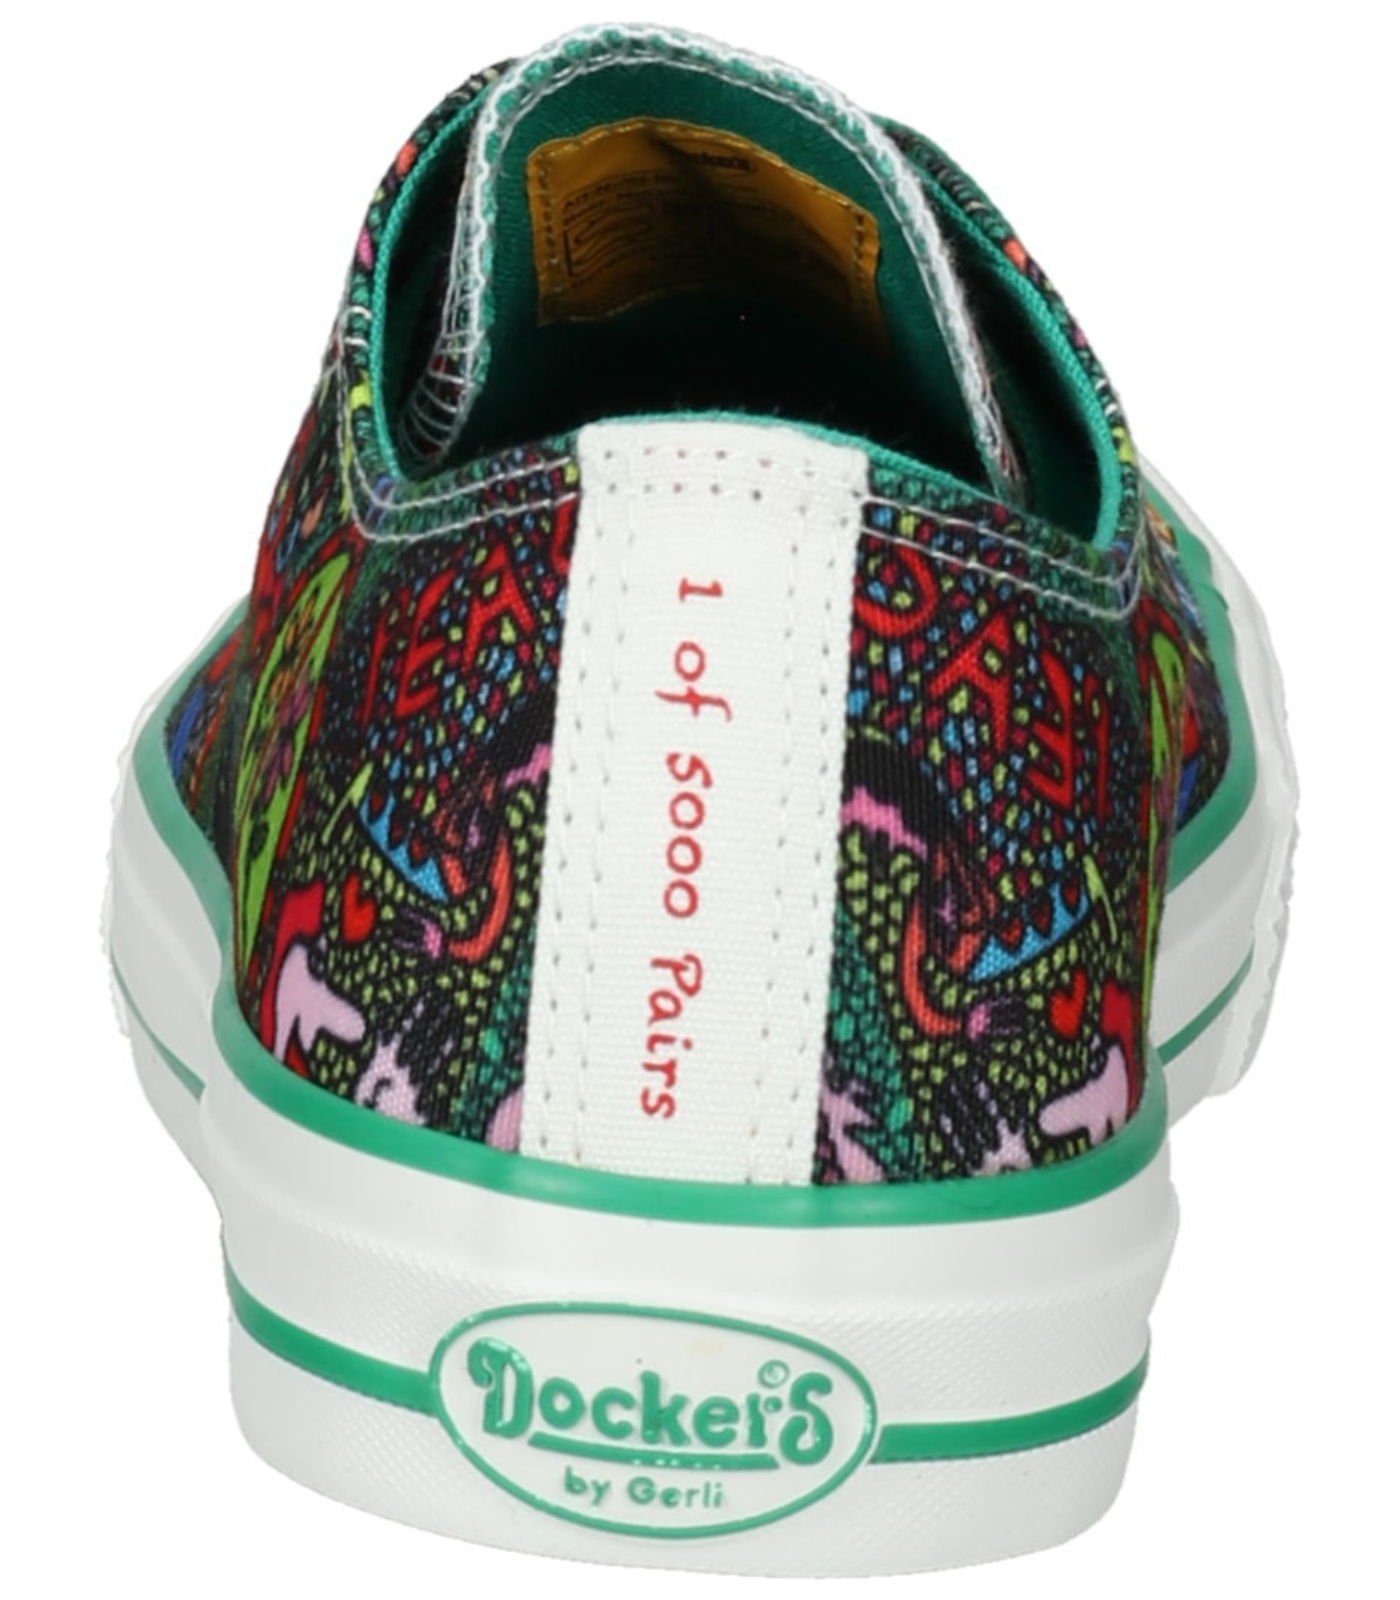 Dockers Sneaker Textil by Gerli Sneaker